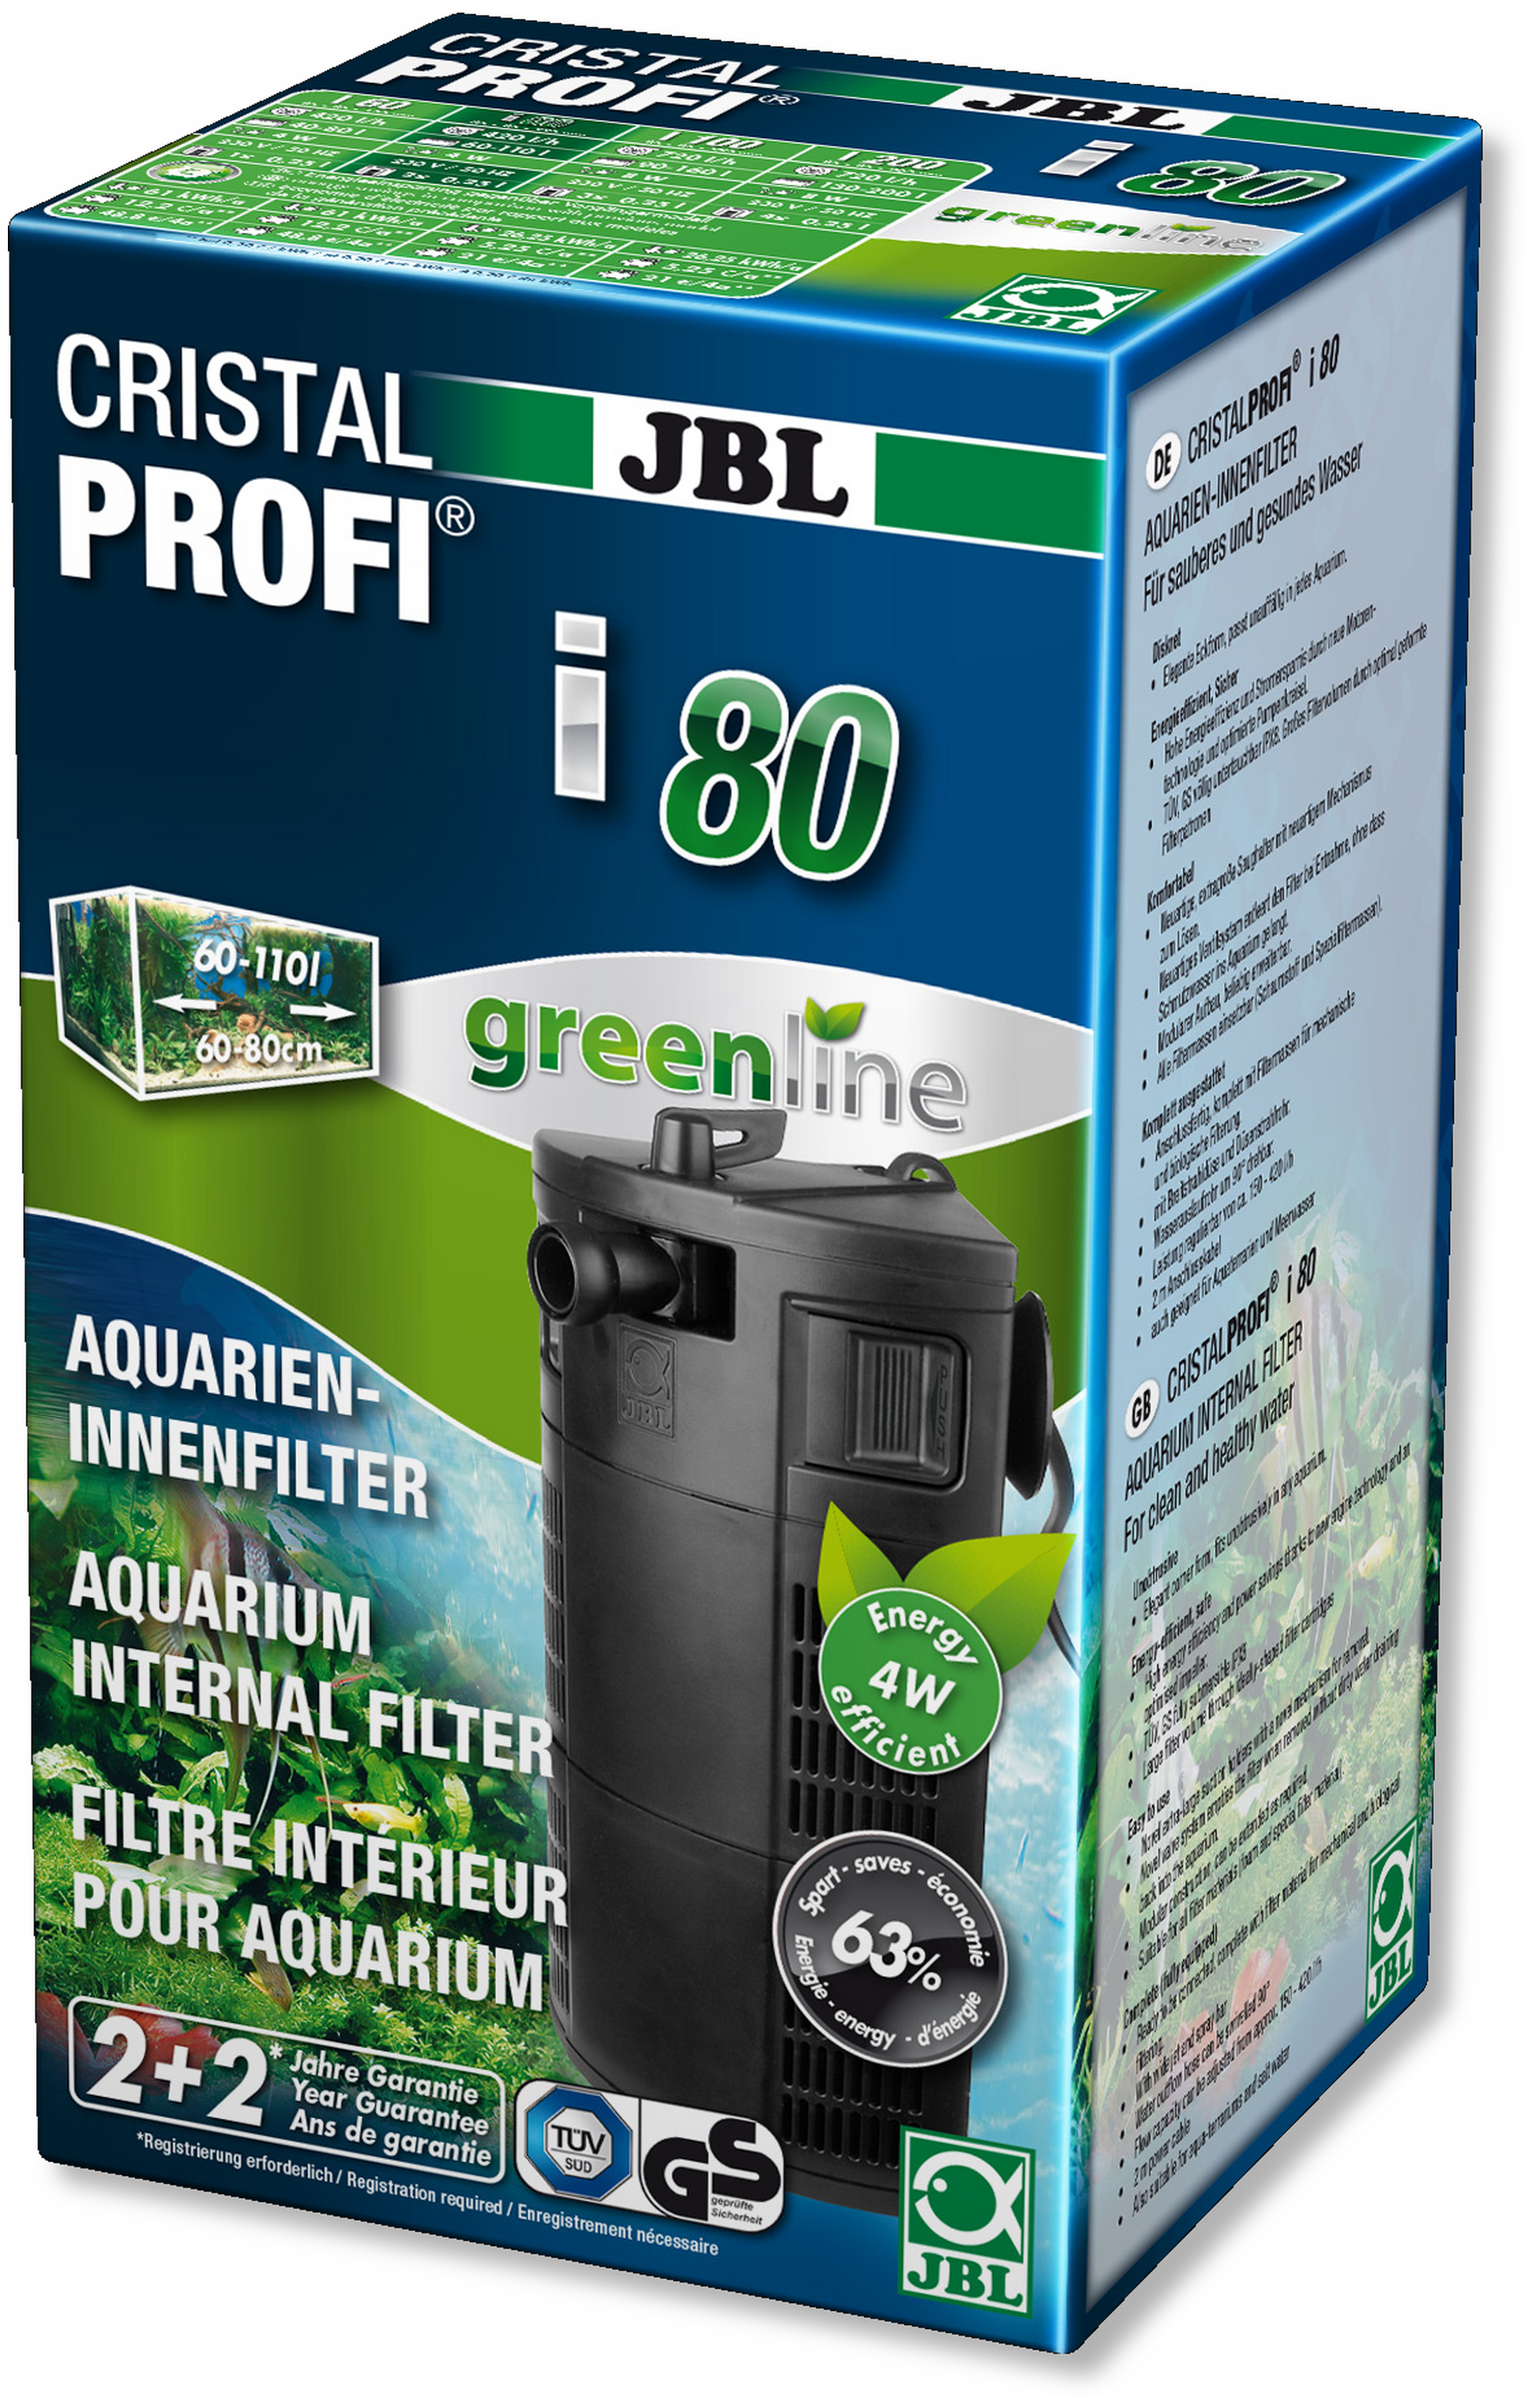 JBL CRISTALPROFI i80 greenline